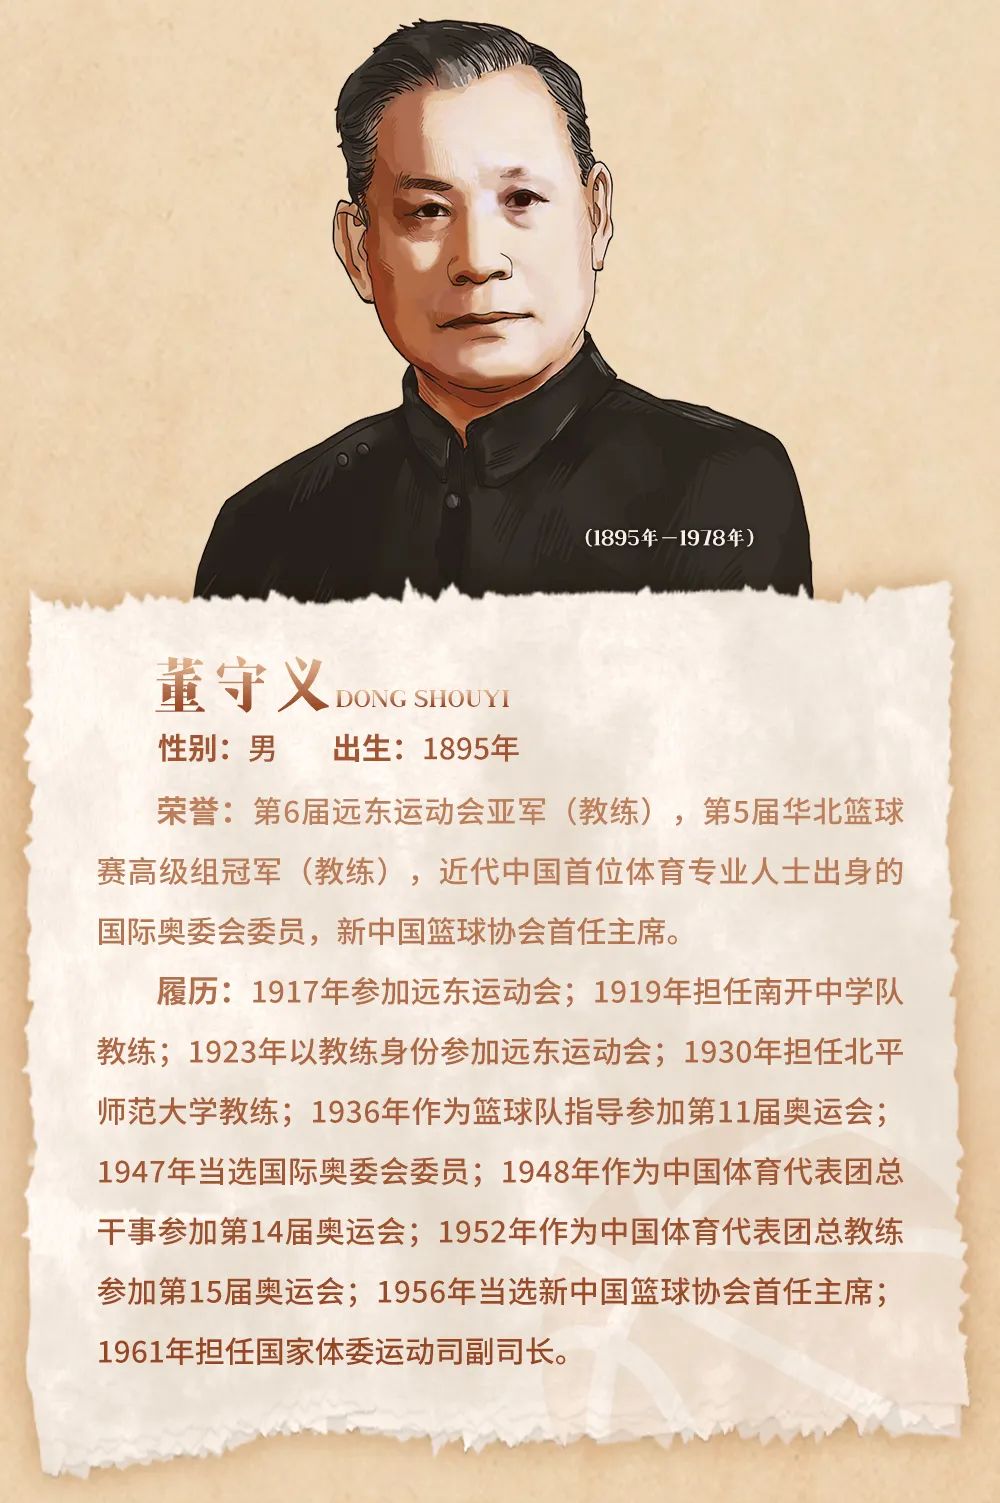 中国名人堂特别致敬人物之董守义中国篮球之父的传奇之路